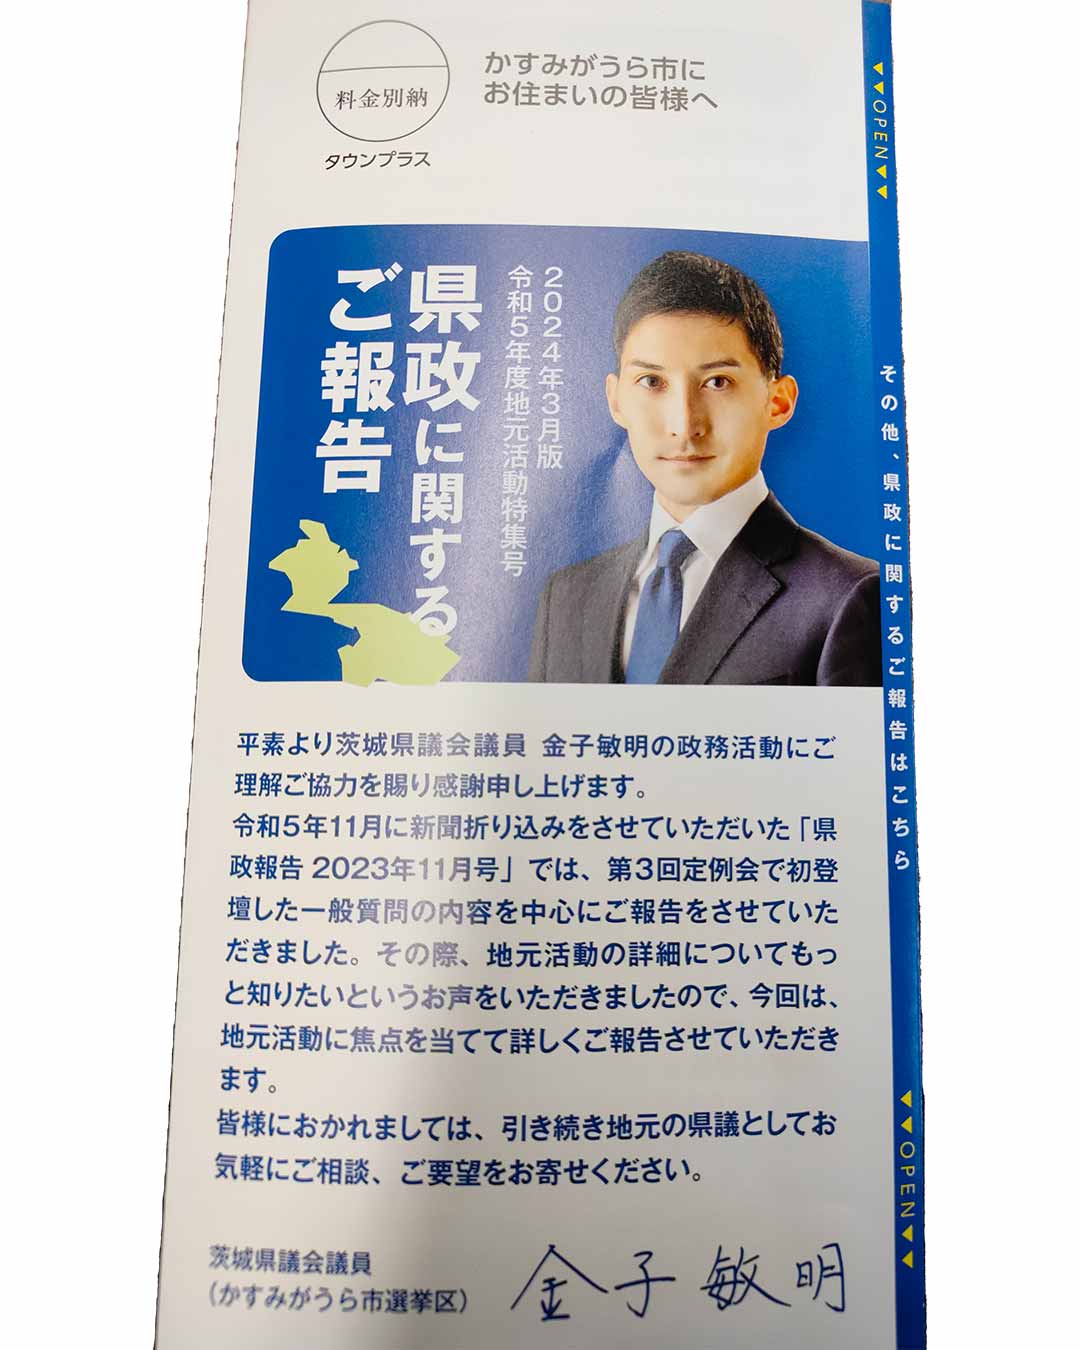 写真:金子敏明県議会議員の「県政に関するご報告」が届きました。の写真